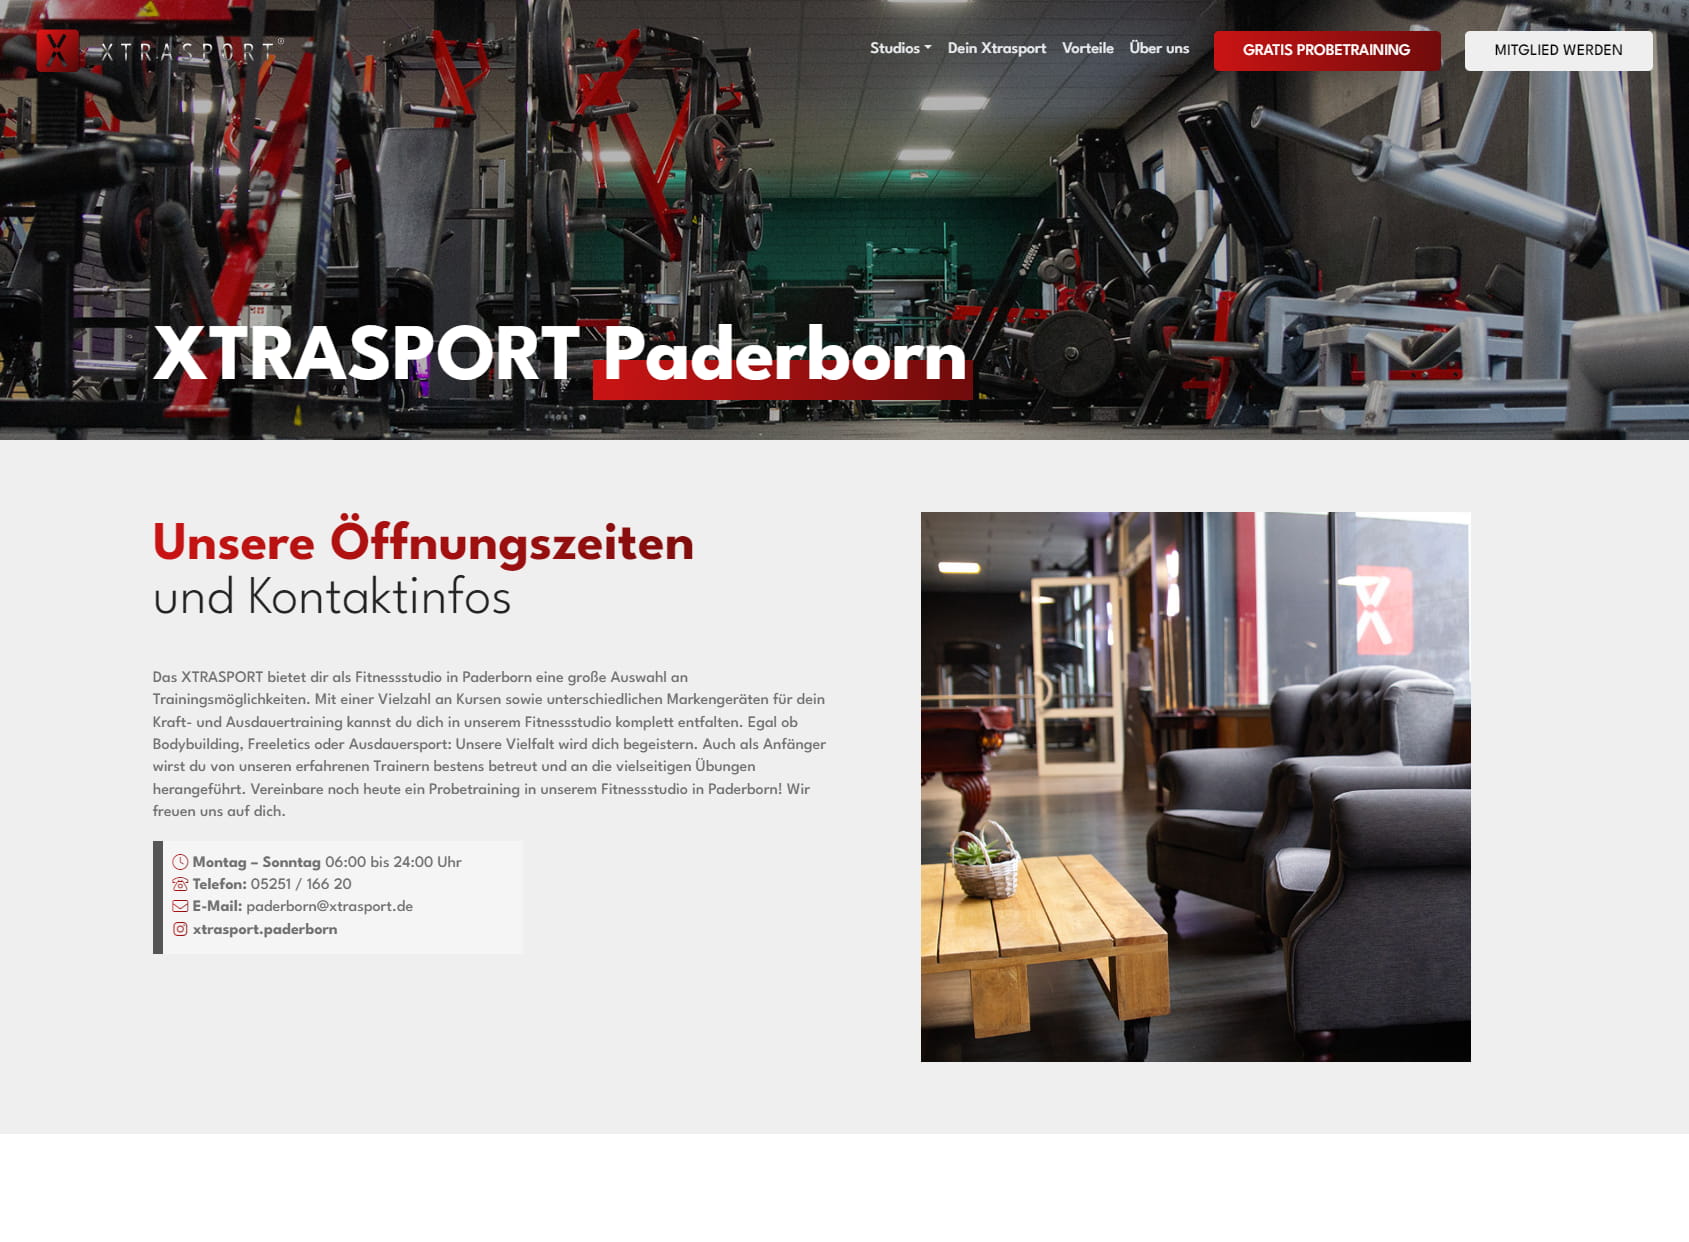 XTRASPORT Fitness Paderborn